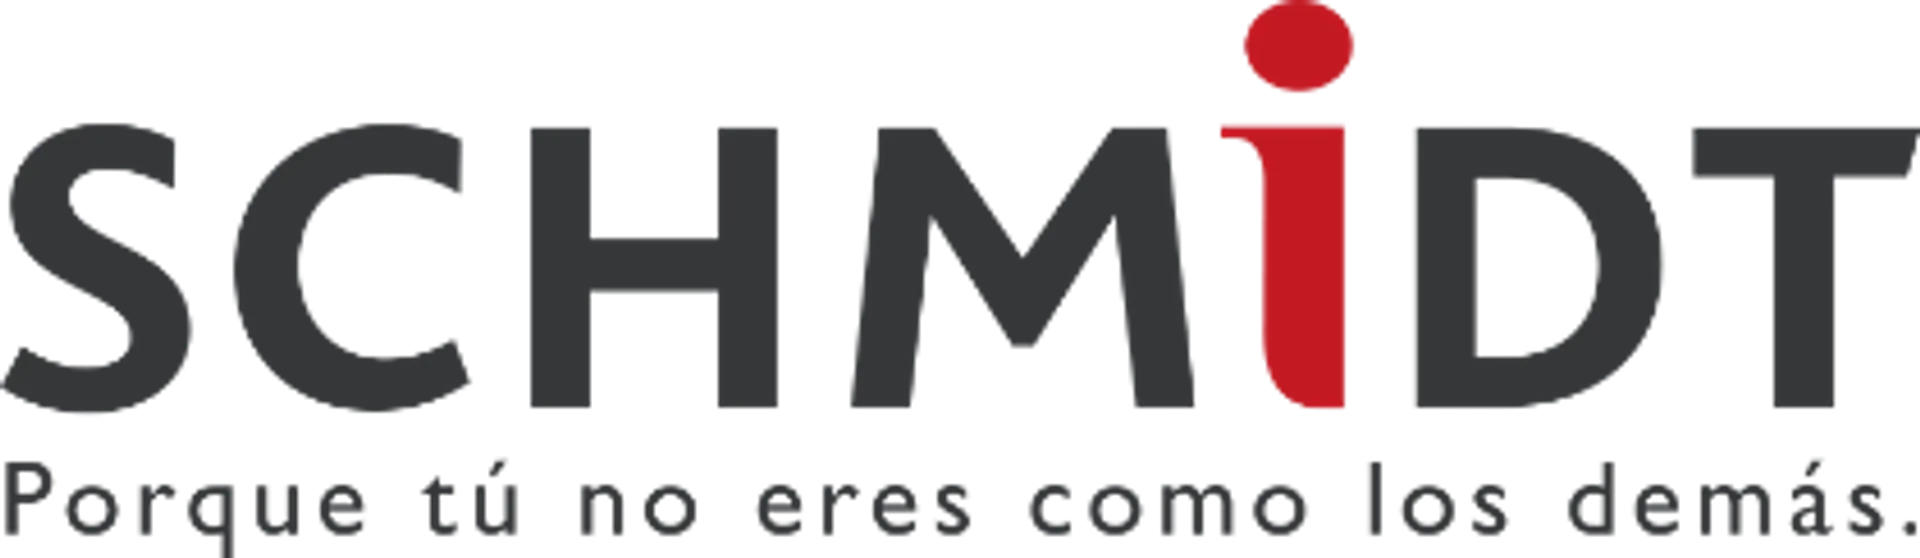 SCHMIDT COCINAS logo